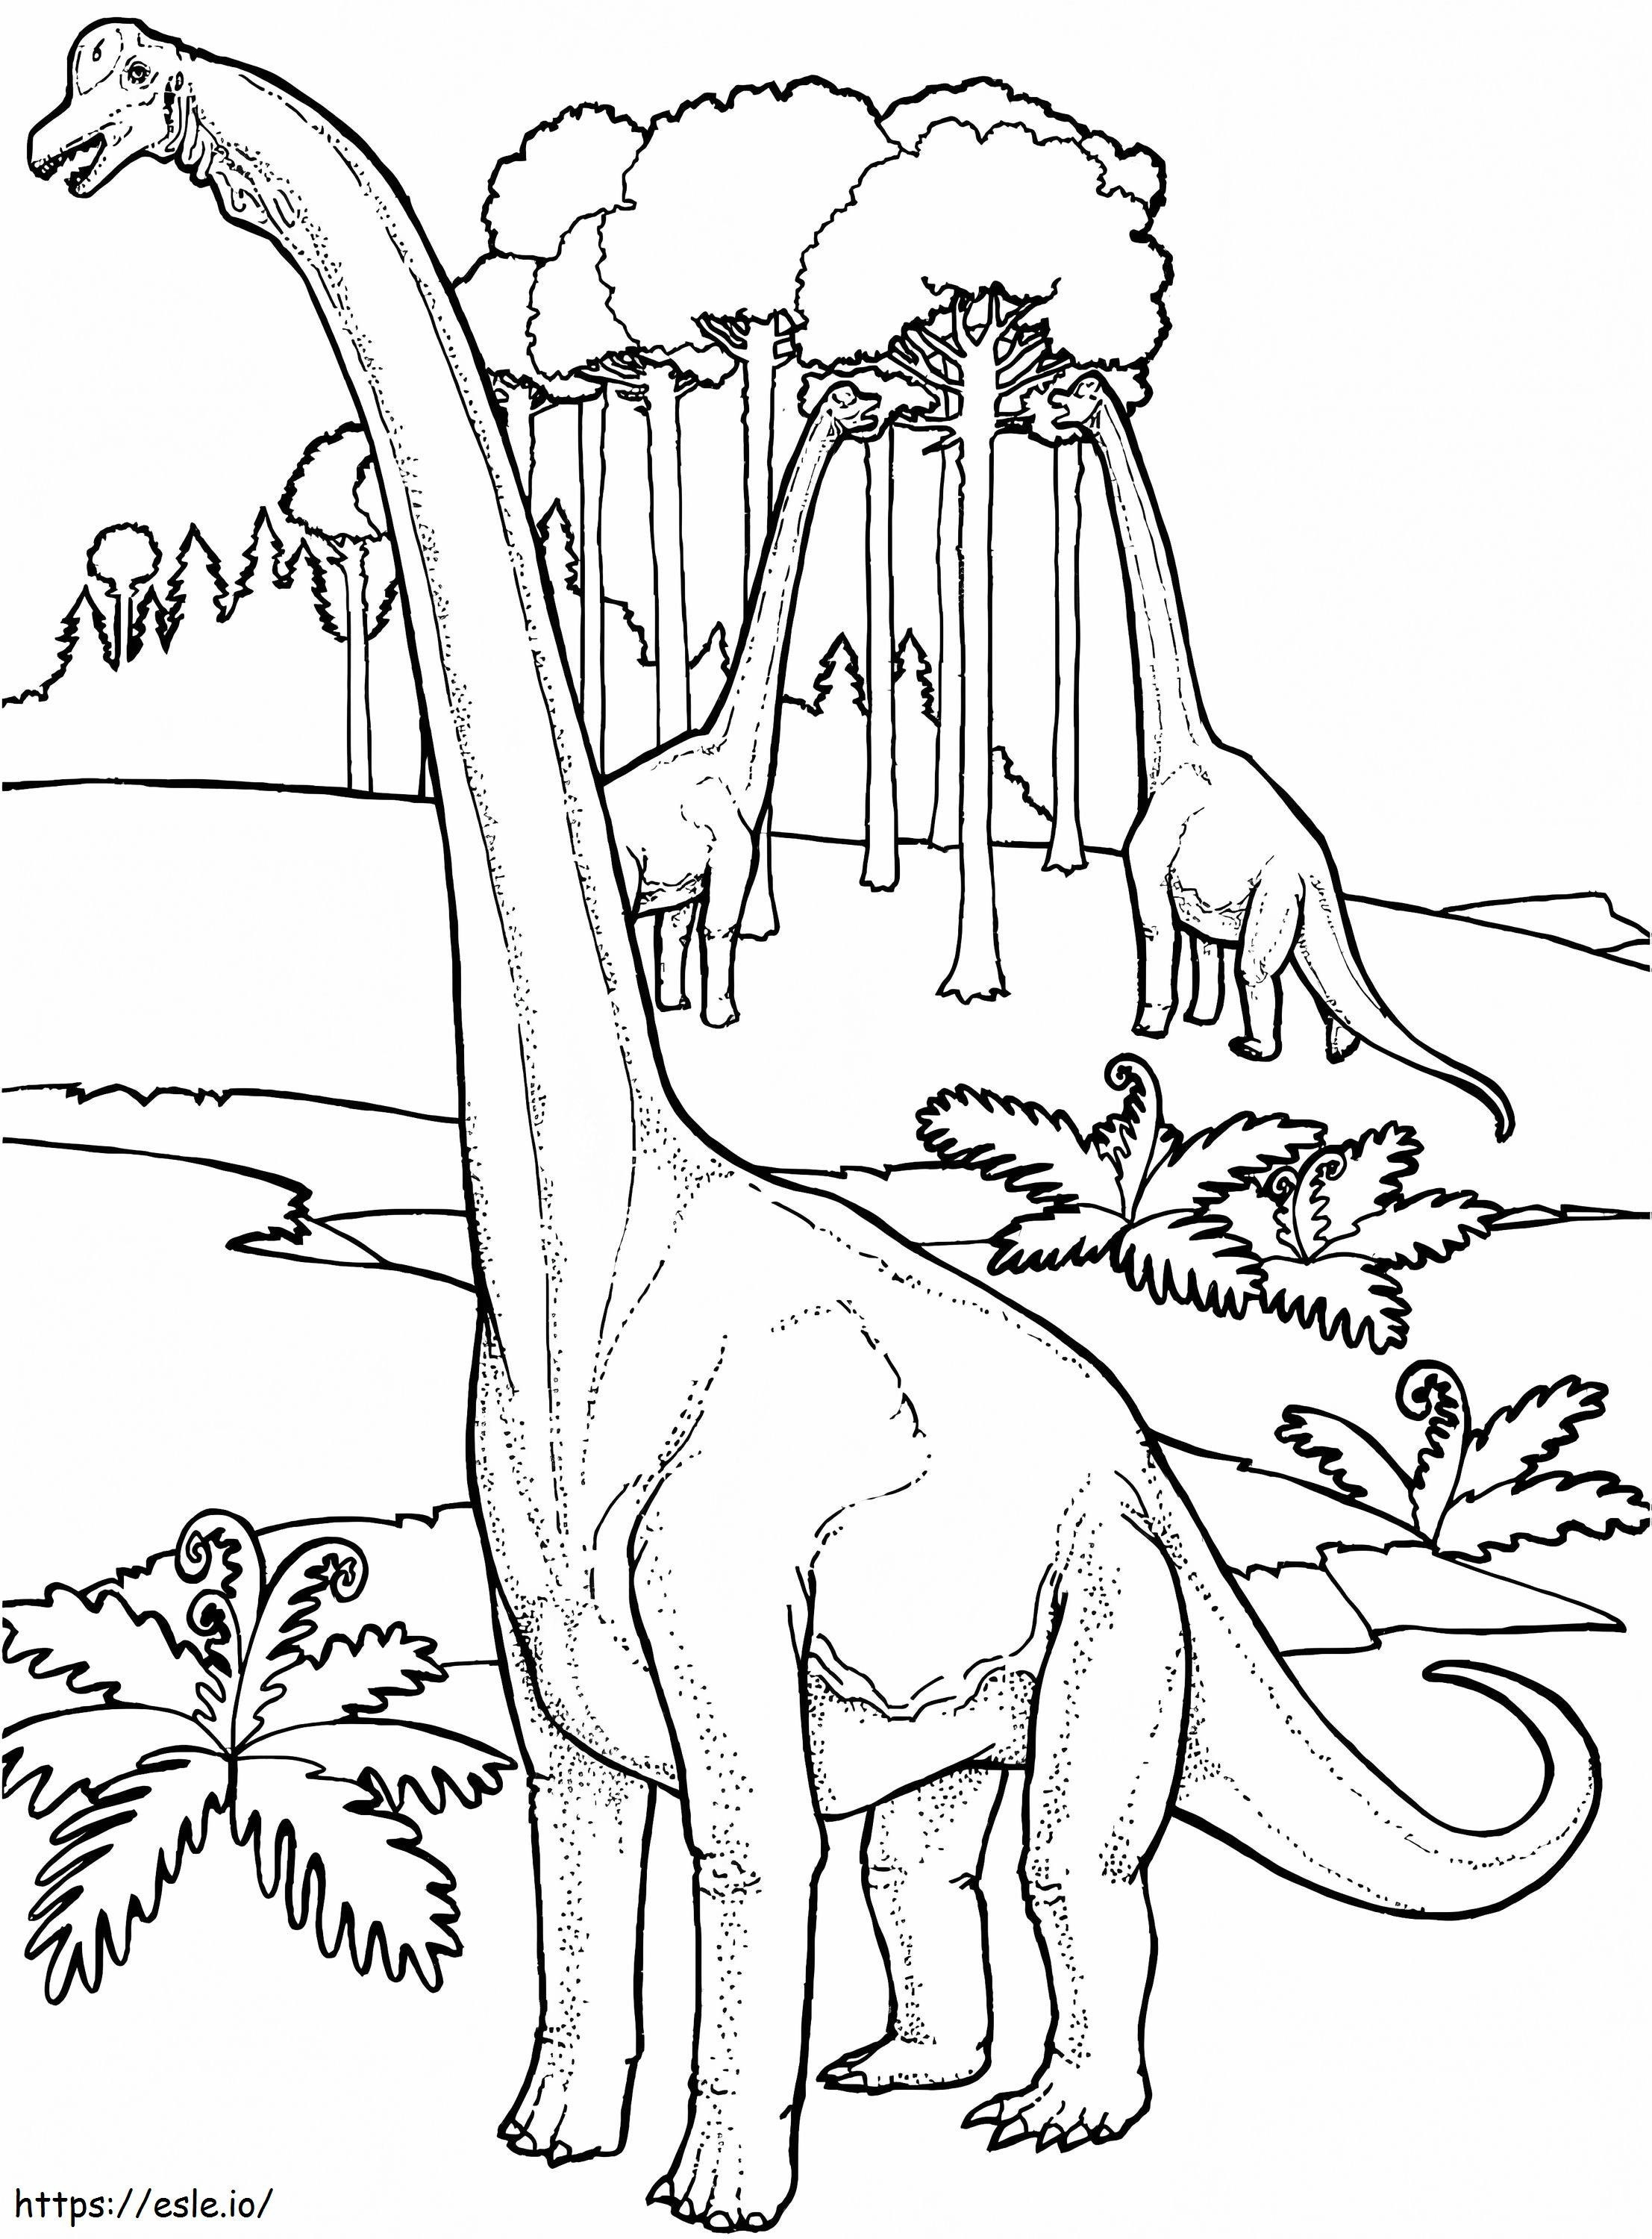 Dinosaure Brachiosaure coloring page